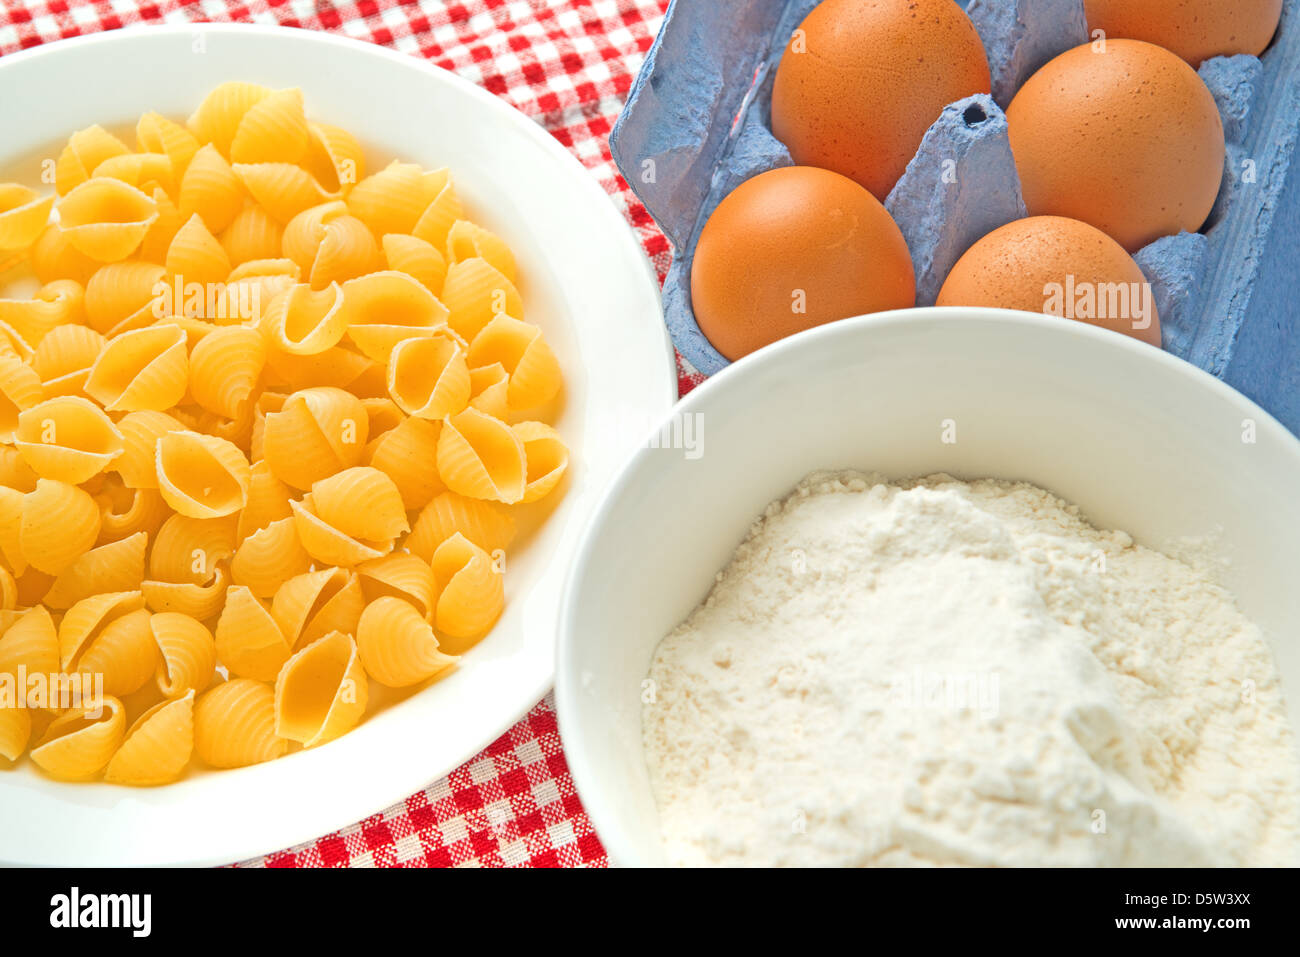 La farina con le uova e la pasta sul tavolo da cucina, crudo ingredienti alimentari. Foto Stock